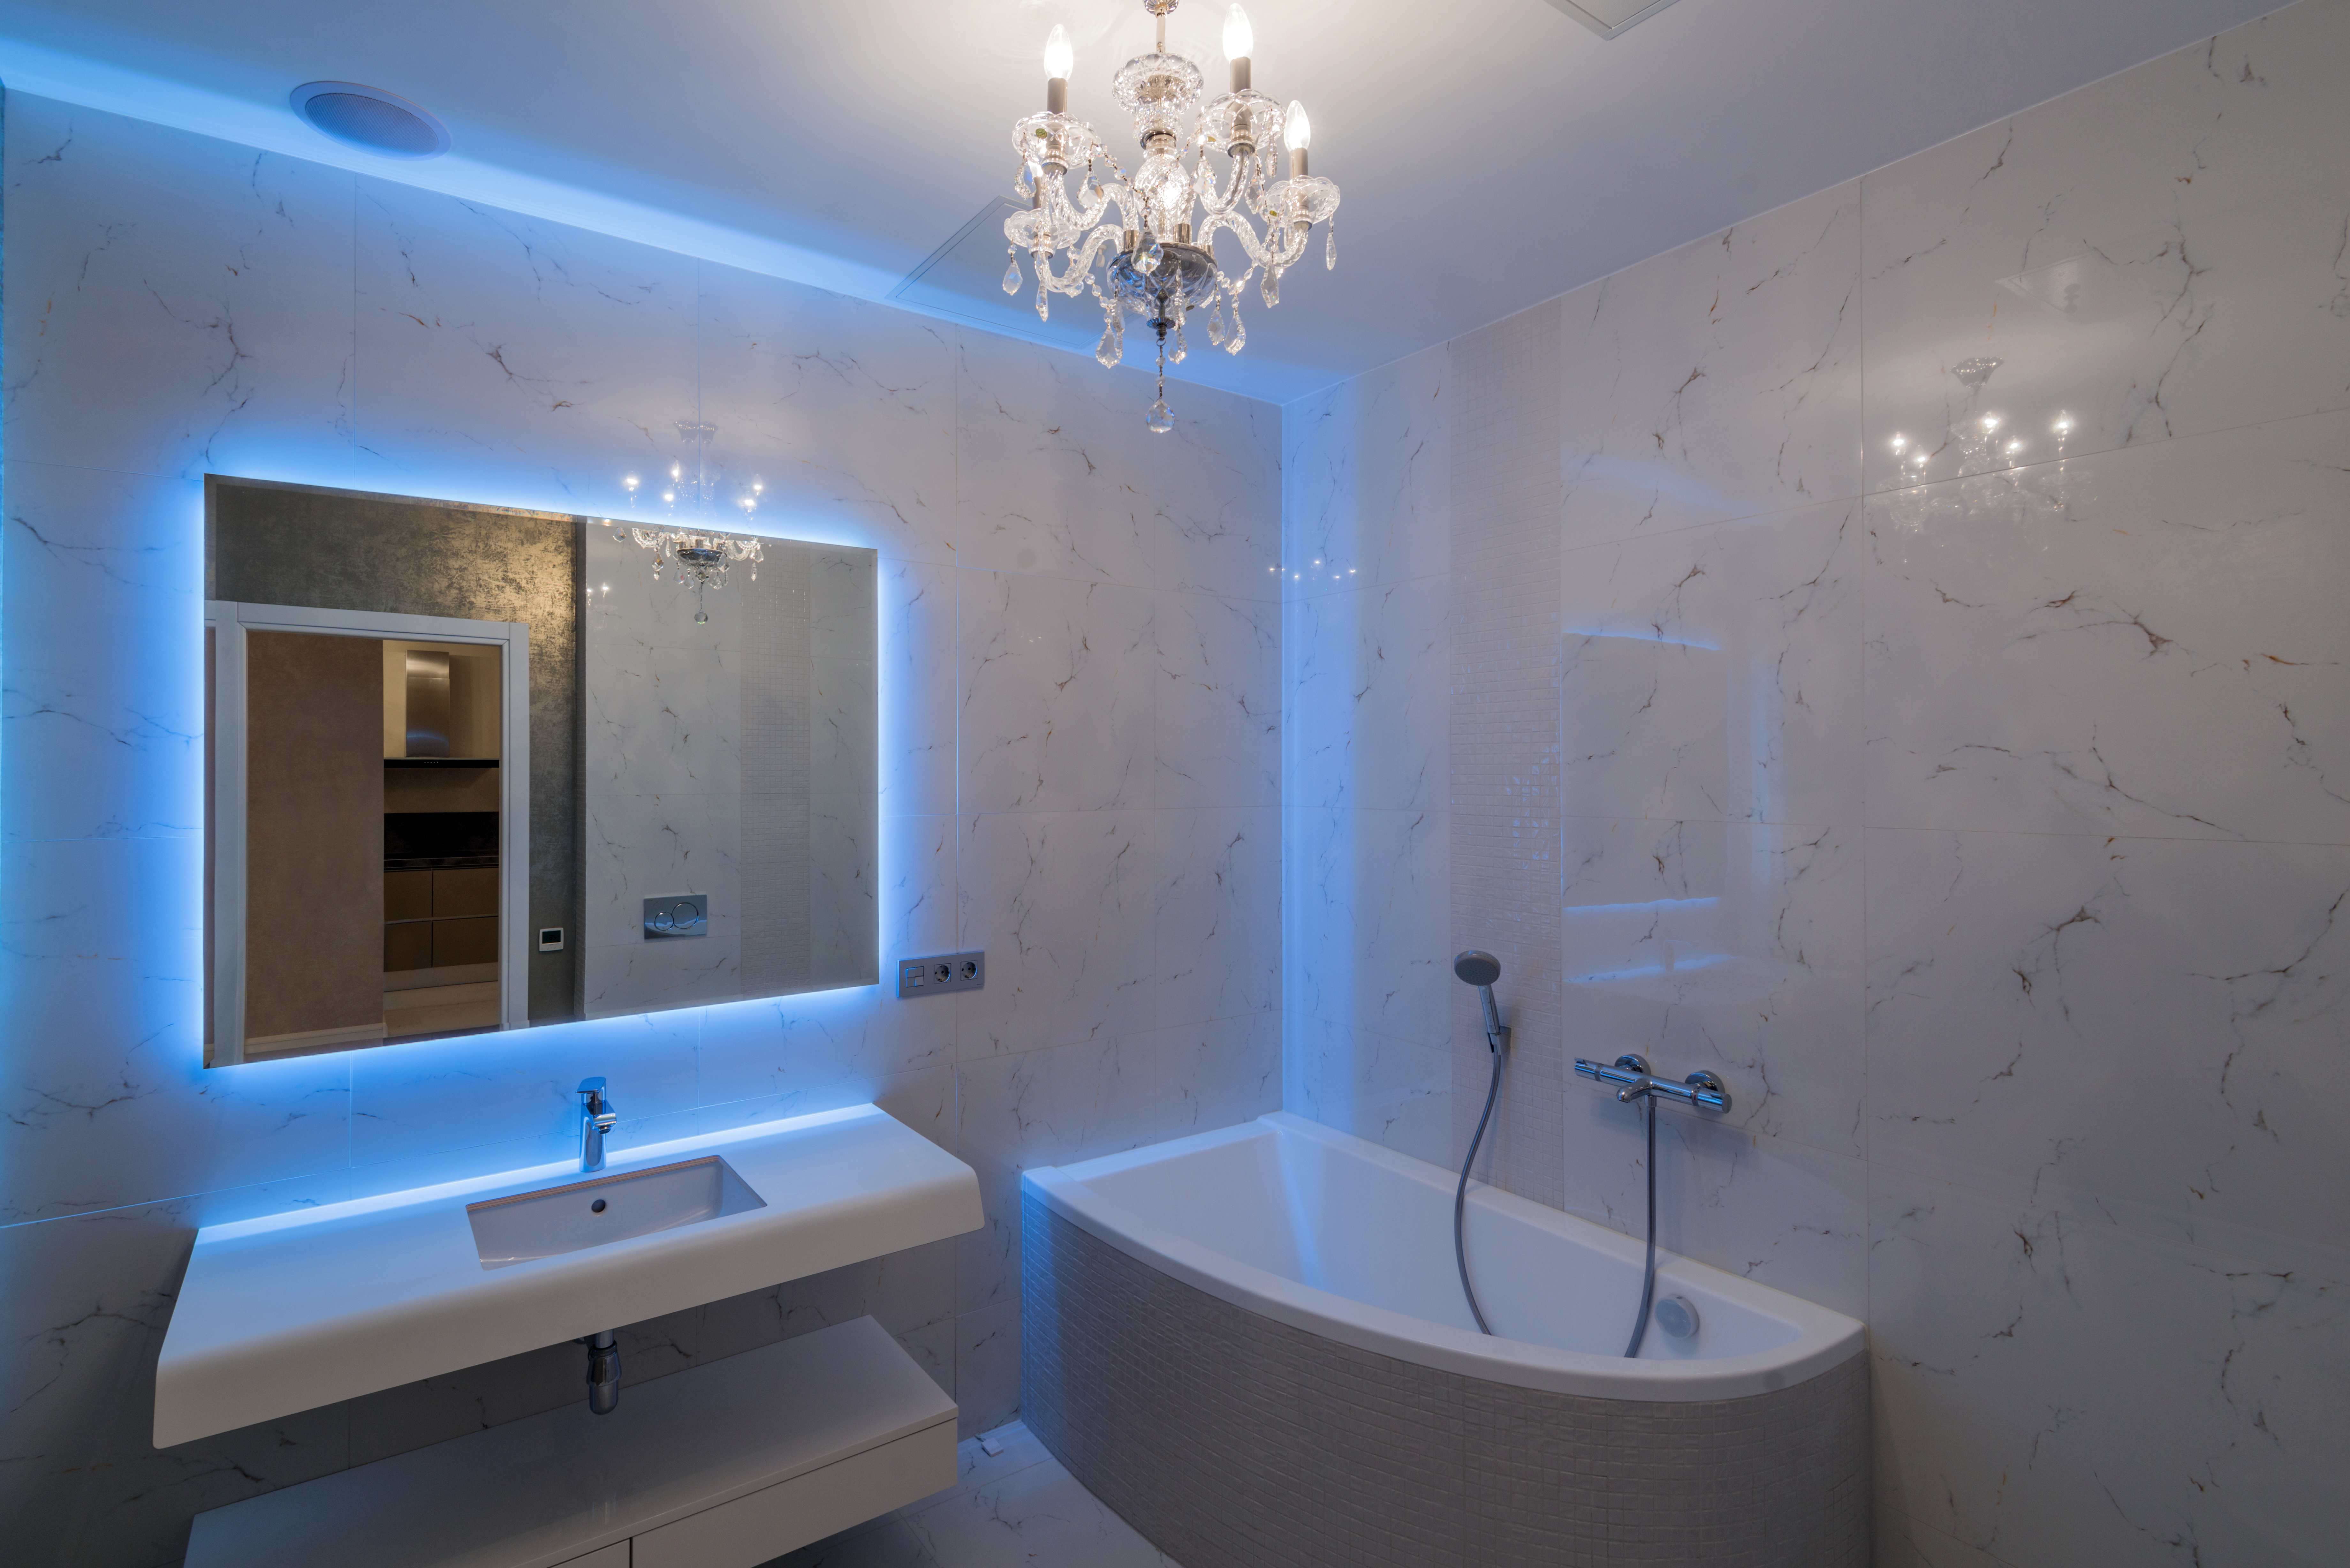 Baño con espejos de luz led indirecta.